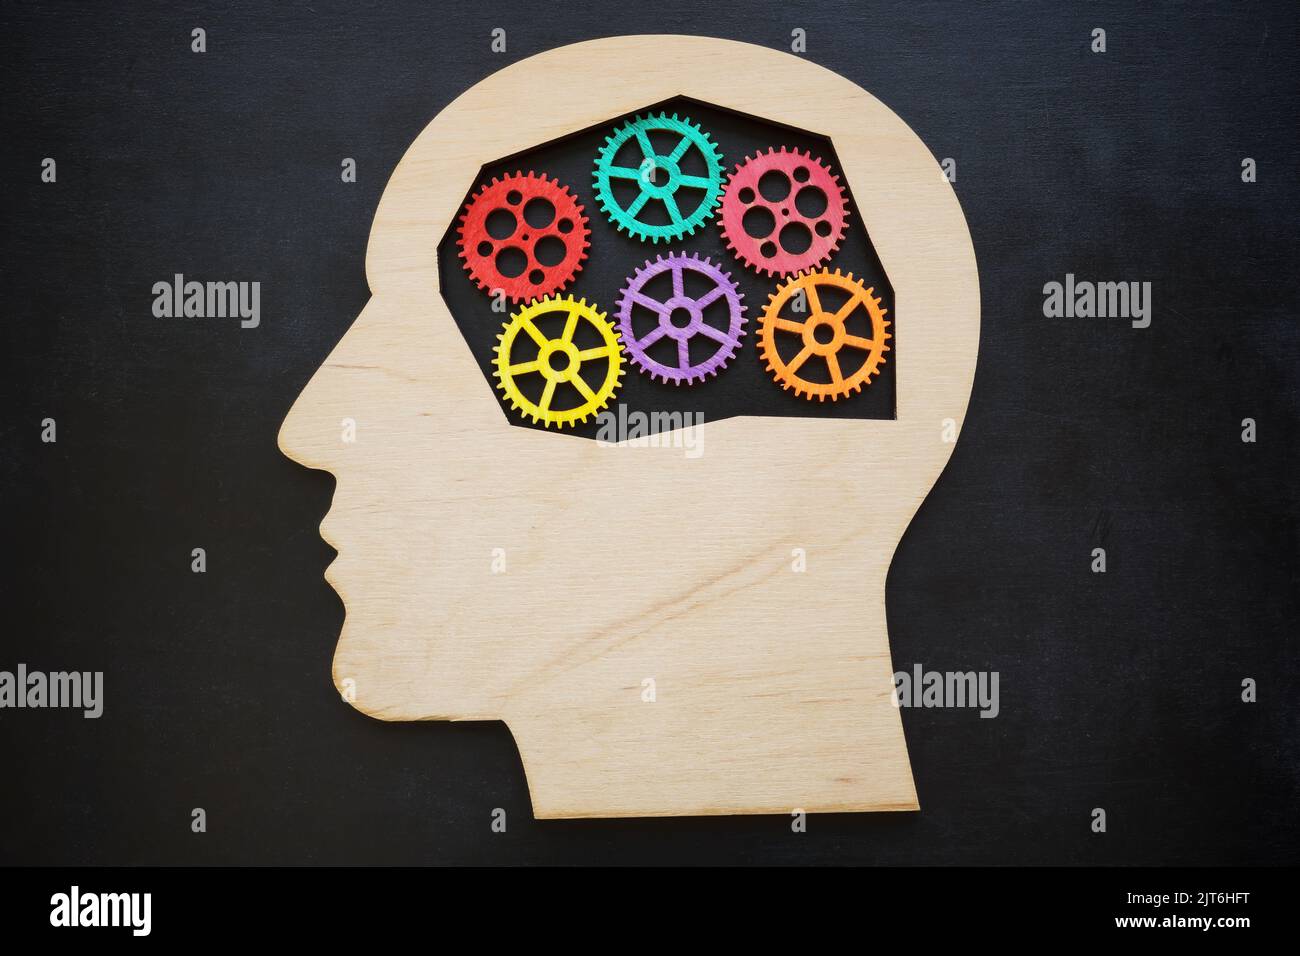 Forme de la tête et engrenages colorés à l'intérieur. Concept de santé mentale. Banque D'Images